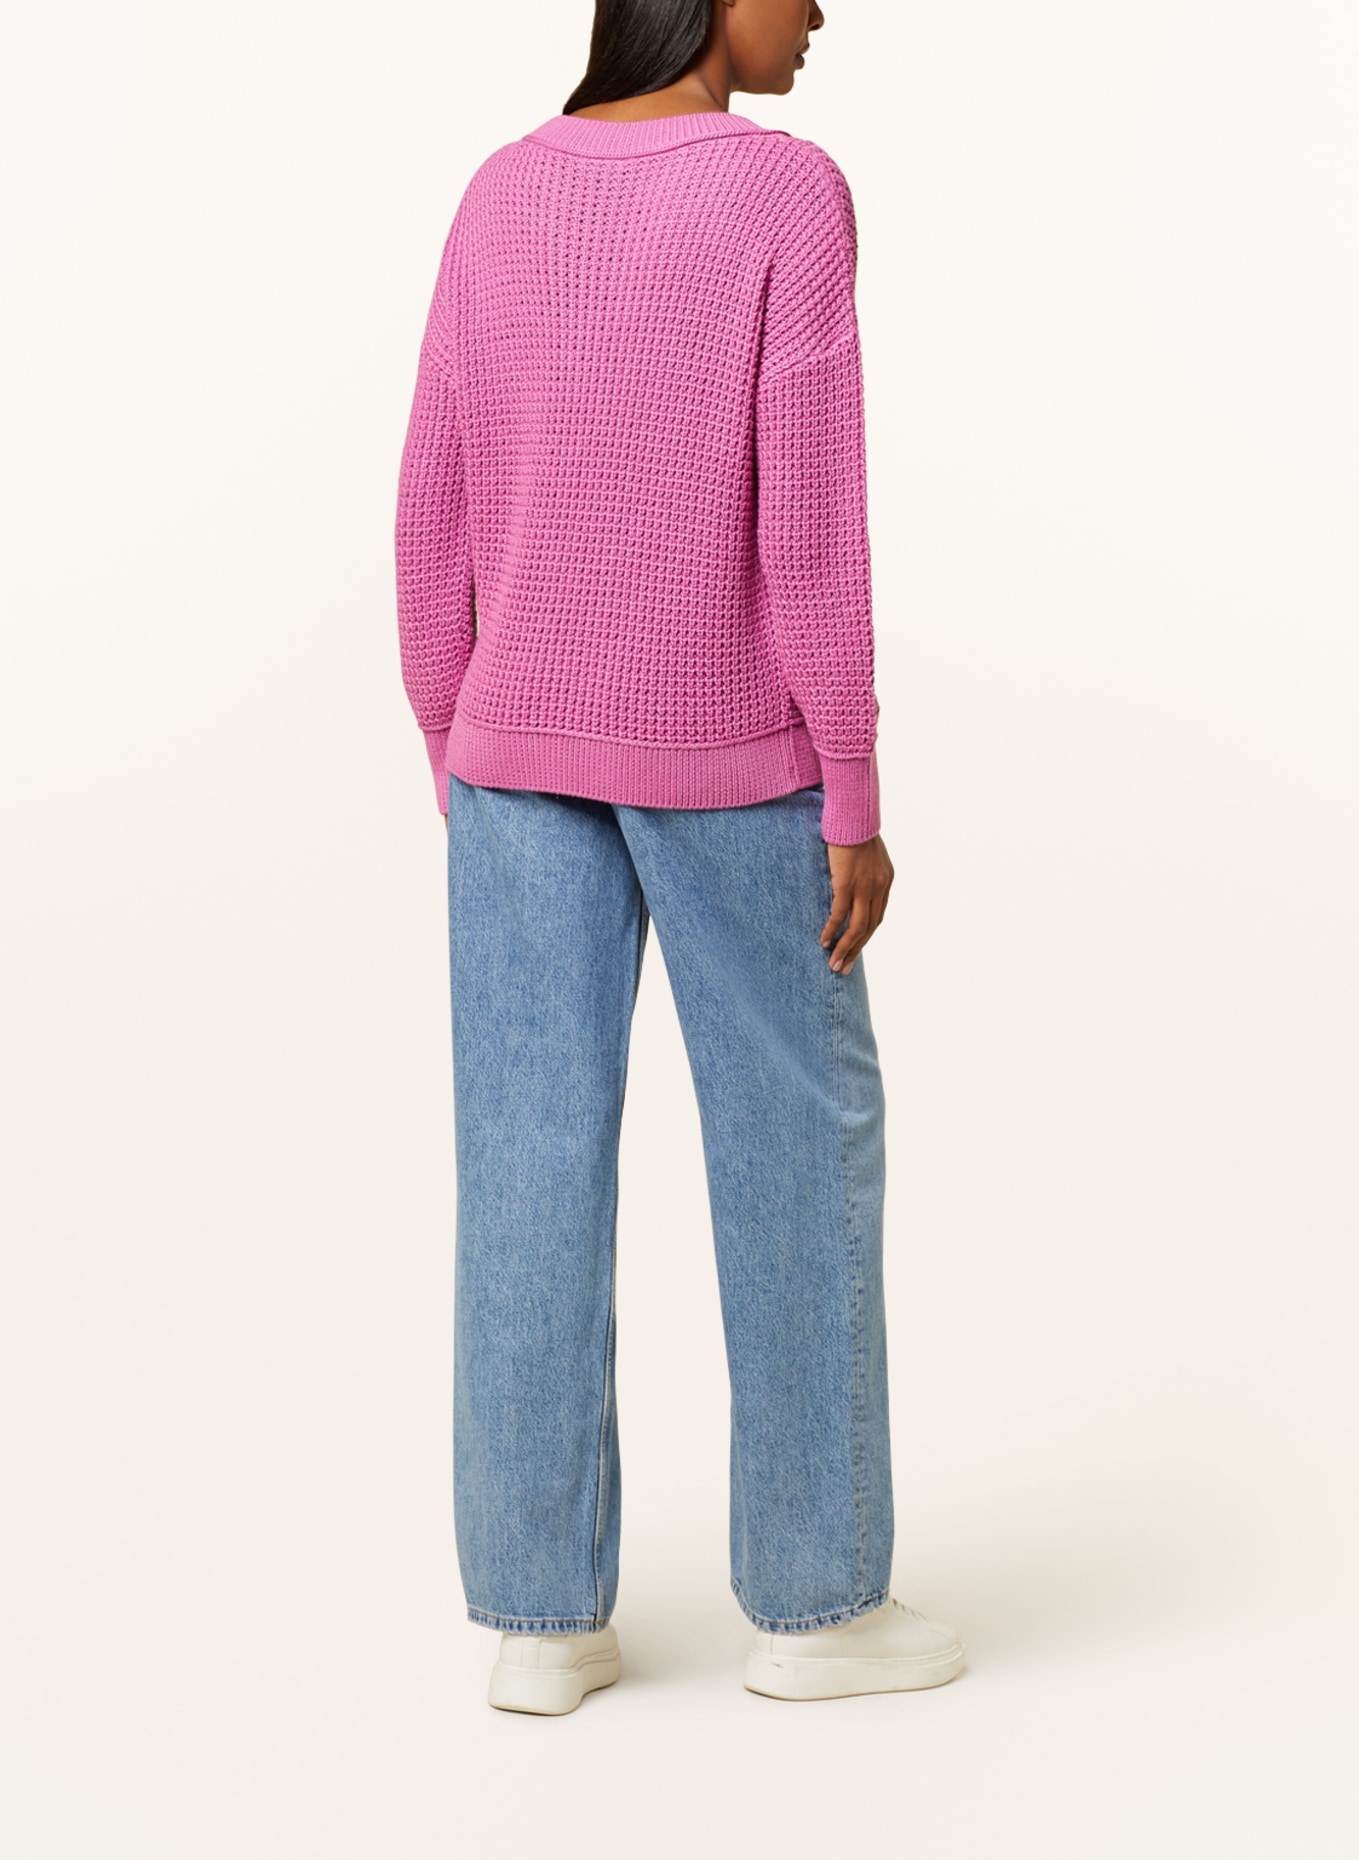 monari Sweater, Color: PINK (Image 3)